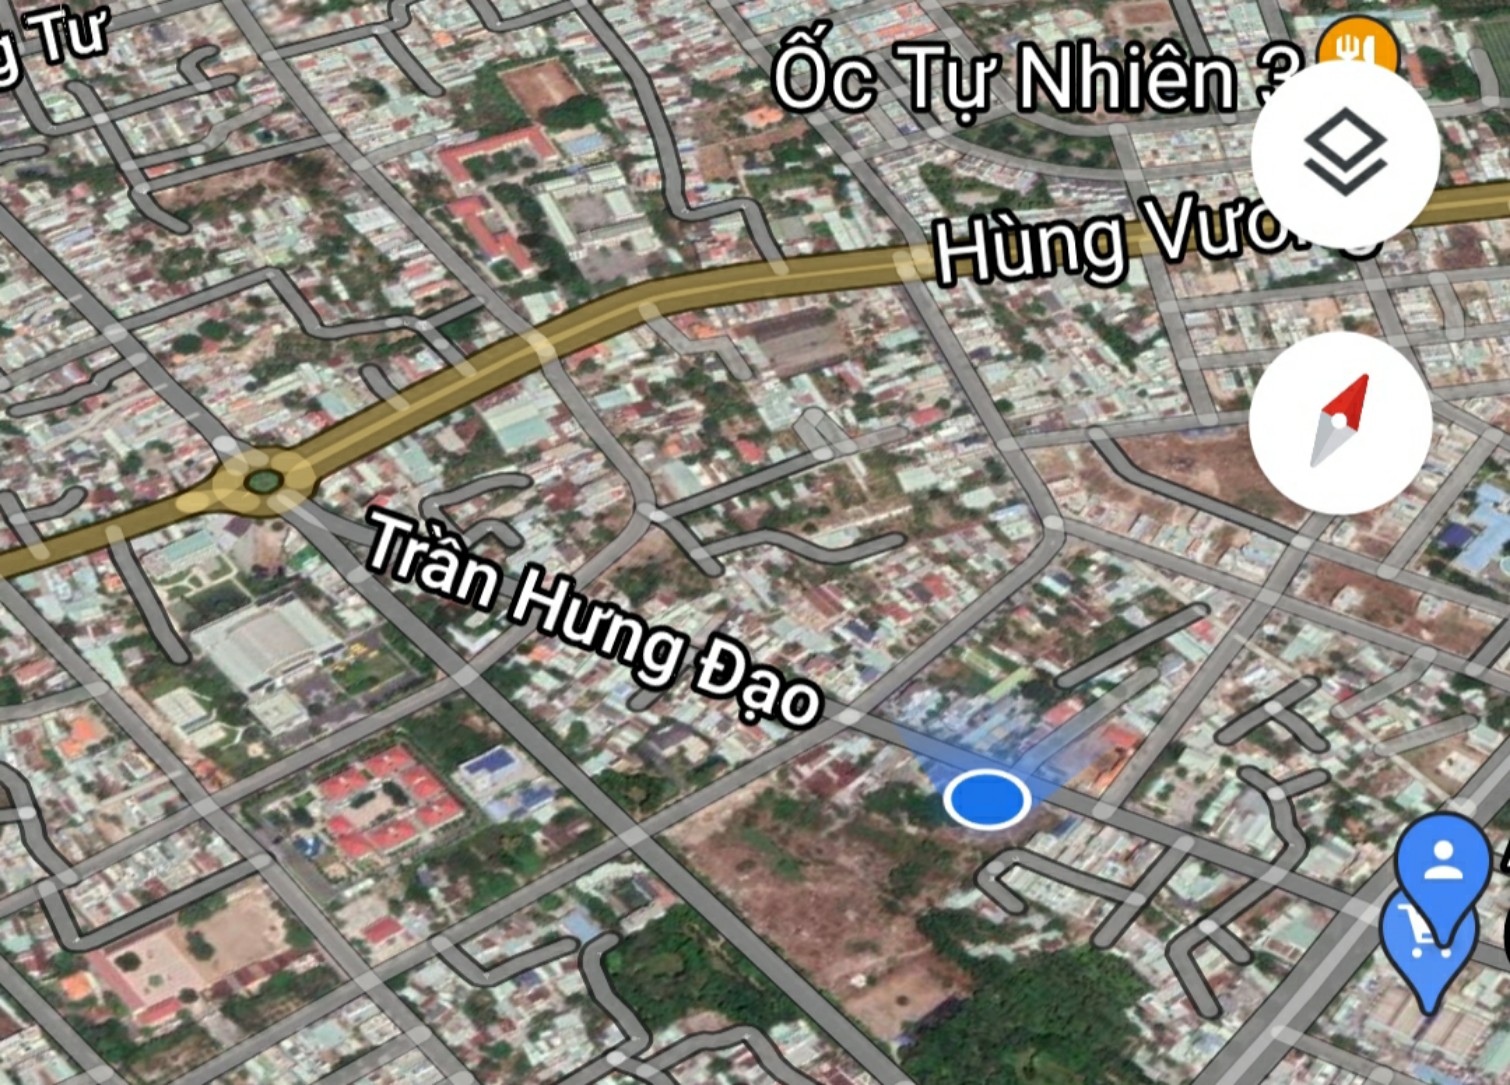 Cần bán đất mặt tiền đường Trần Hưng Đạo, phường Phước Nguyên, Tp. Bà Rịa.